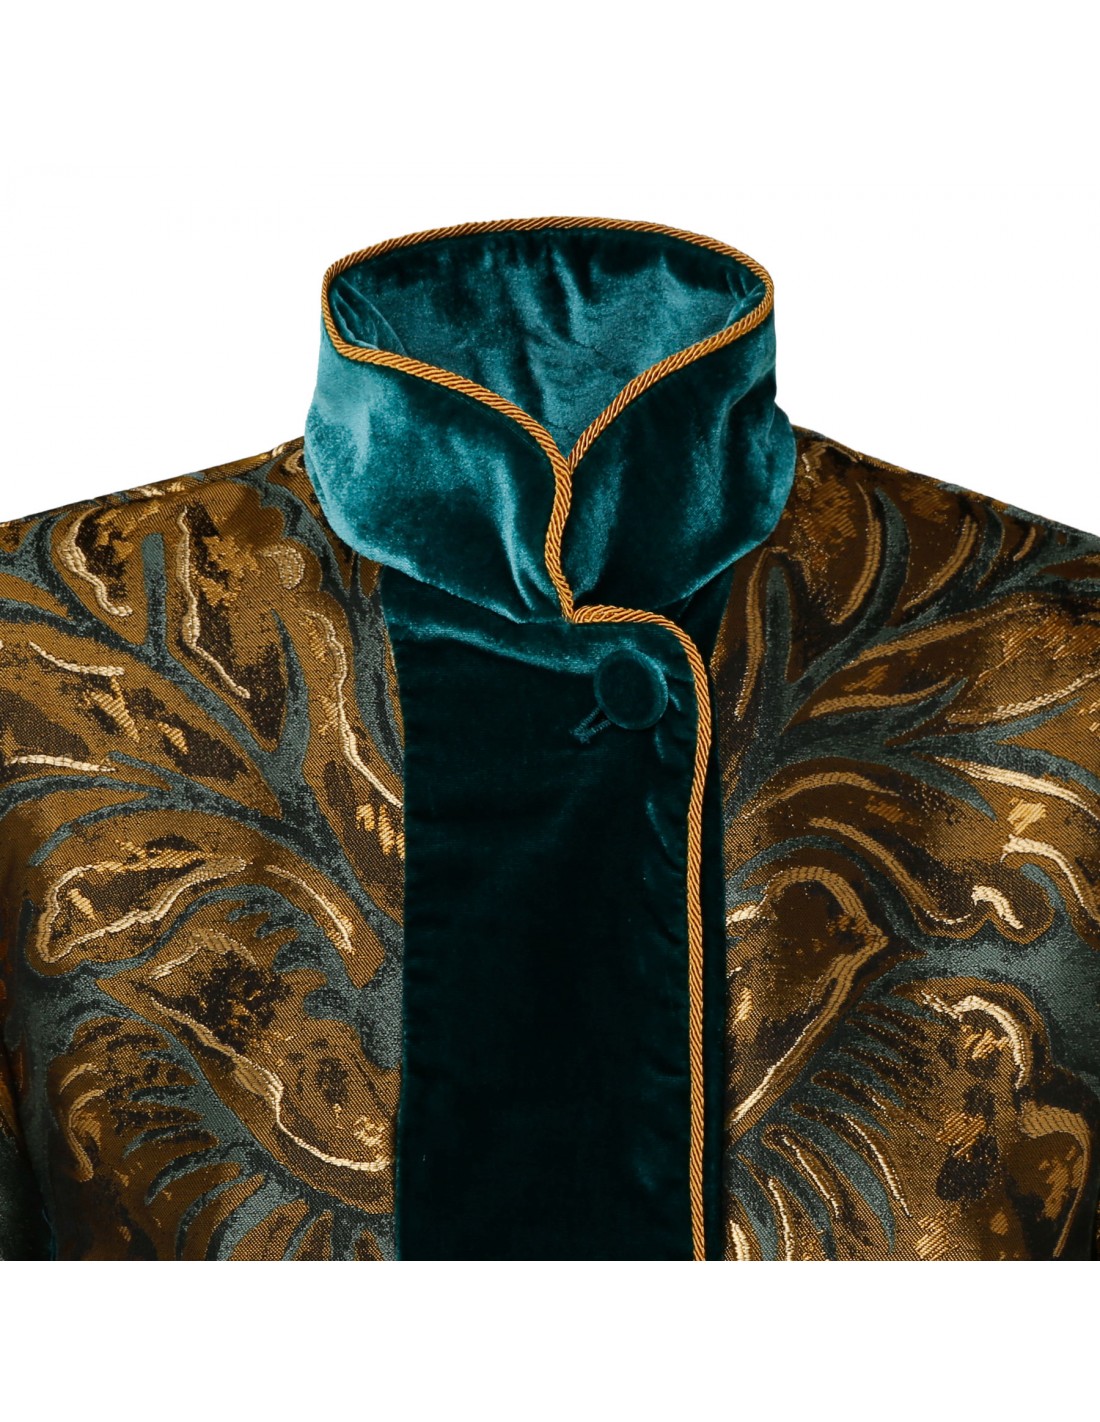 Agrio jacquard jacket